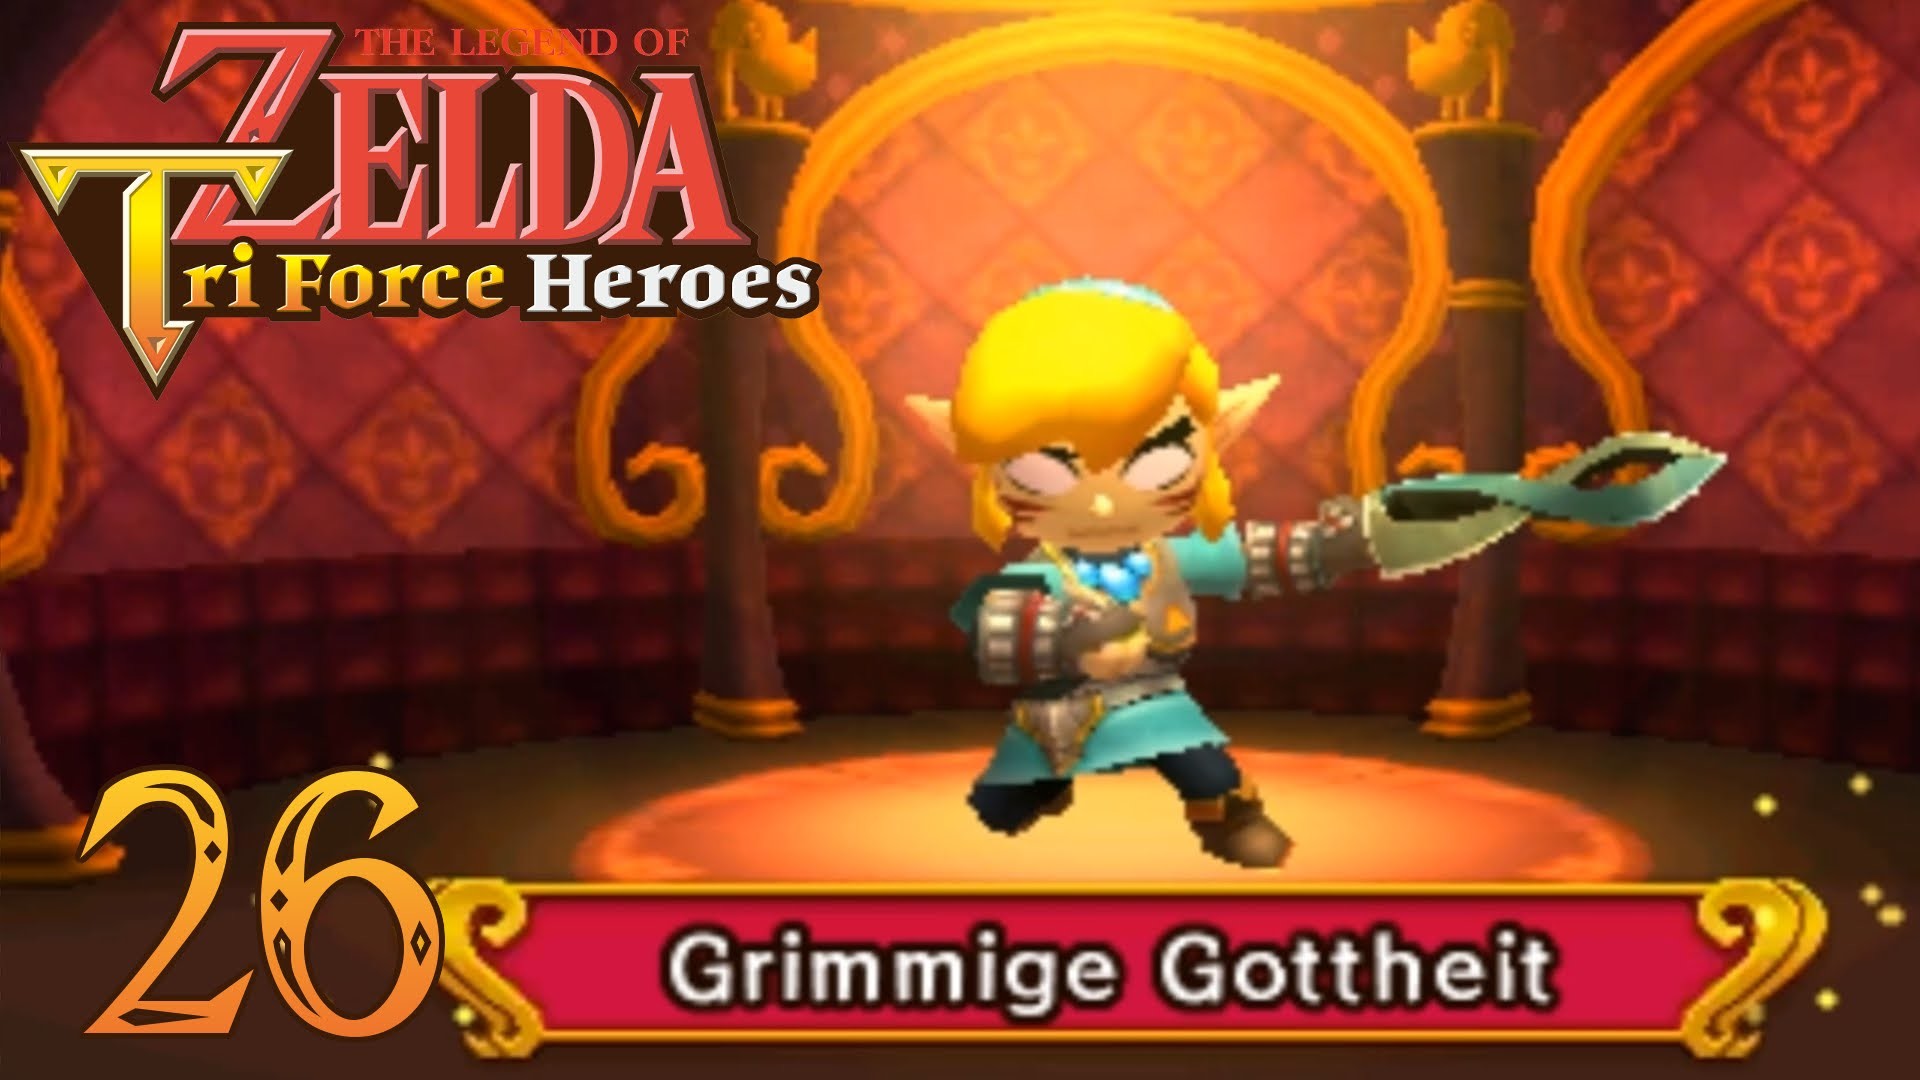 1920x1080 Grimmige Gottheit - The Legend of Zelda: Tri Force Heroes #26